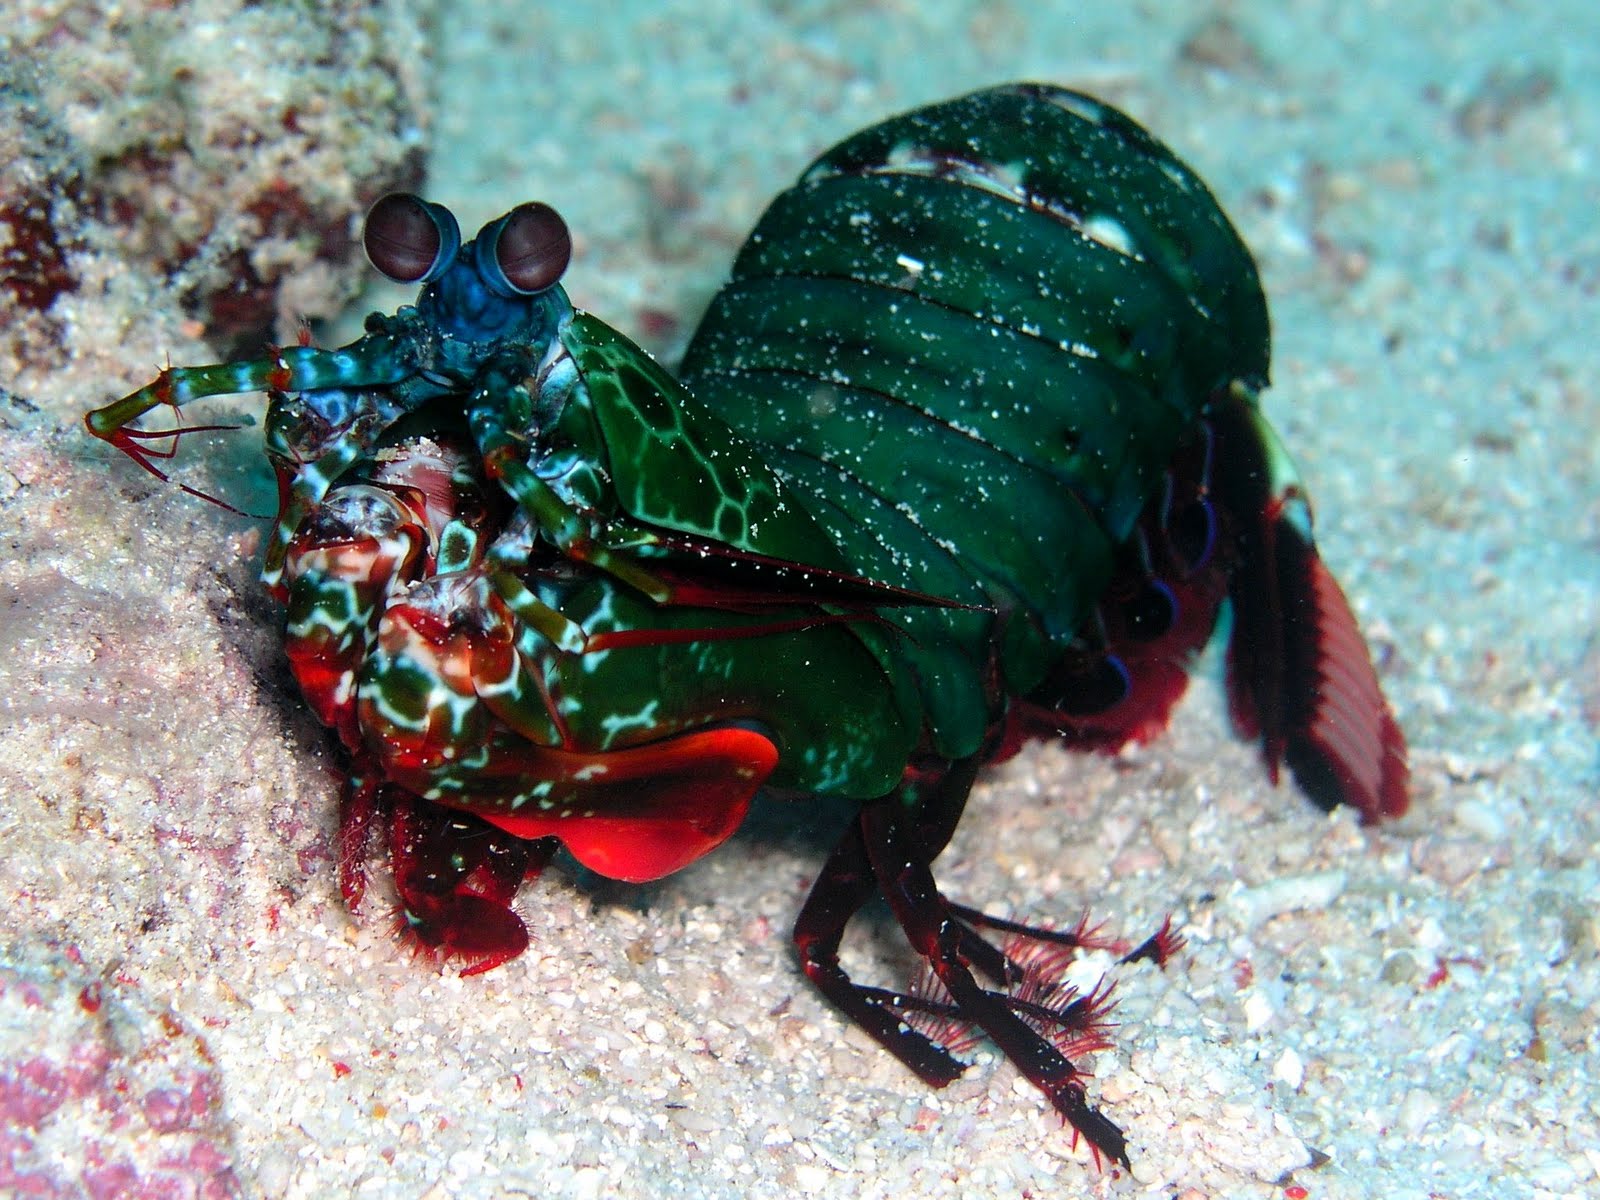 peacock shrimp